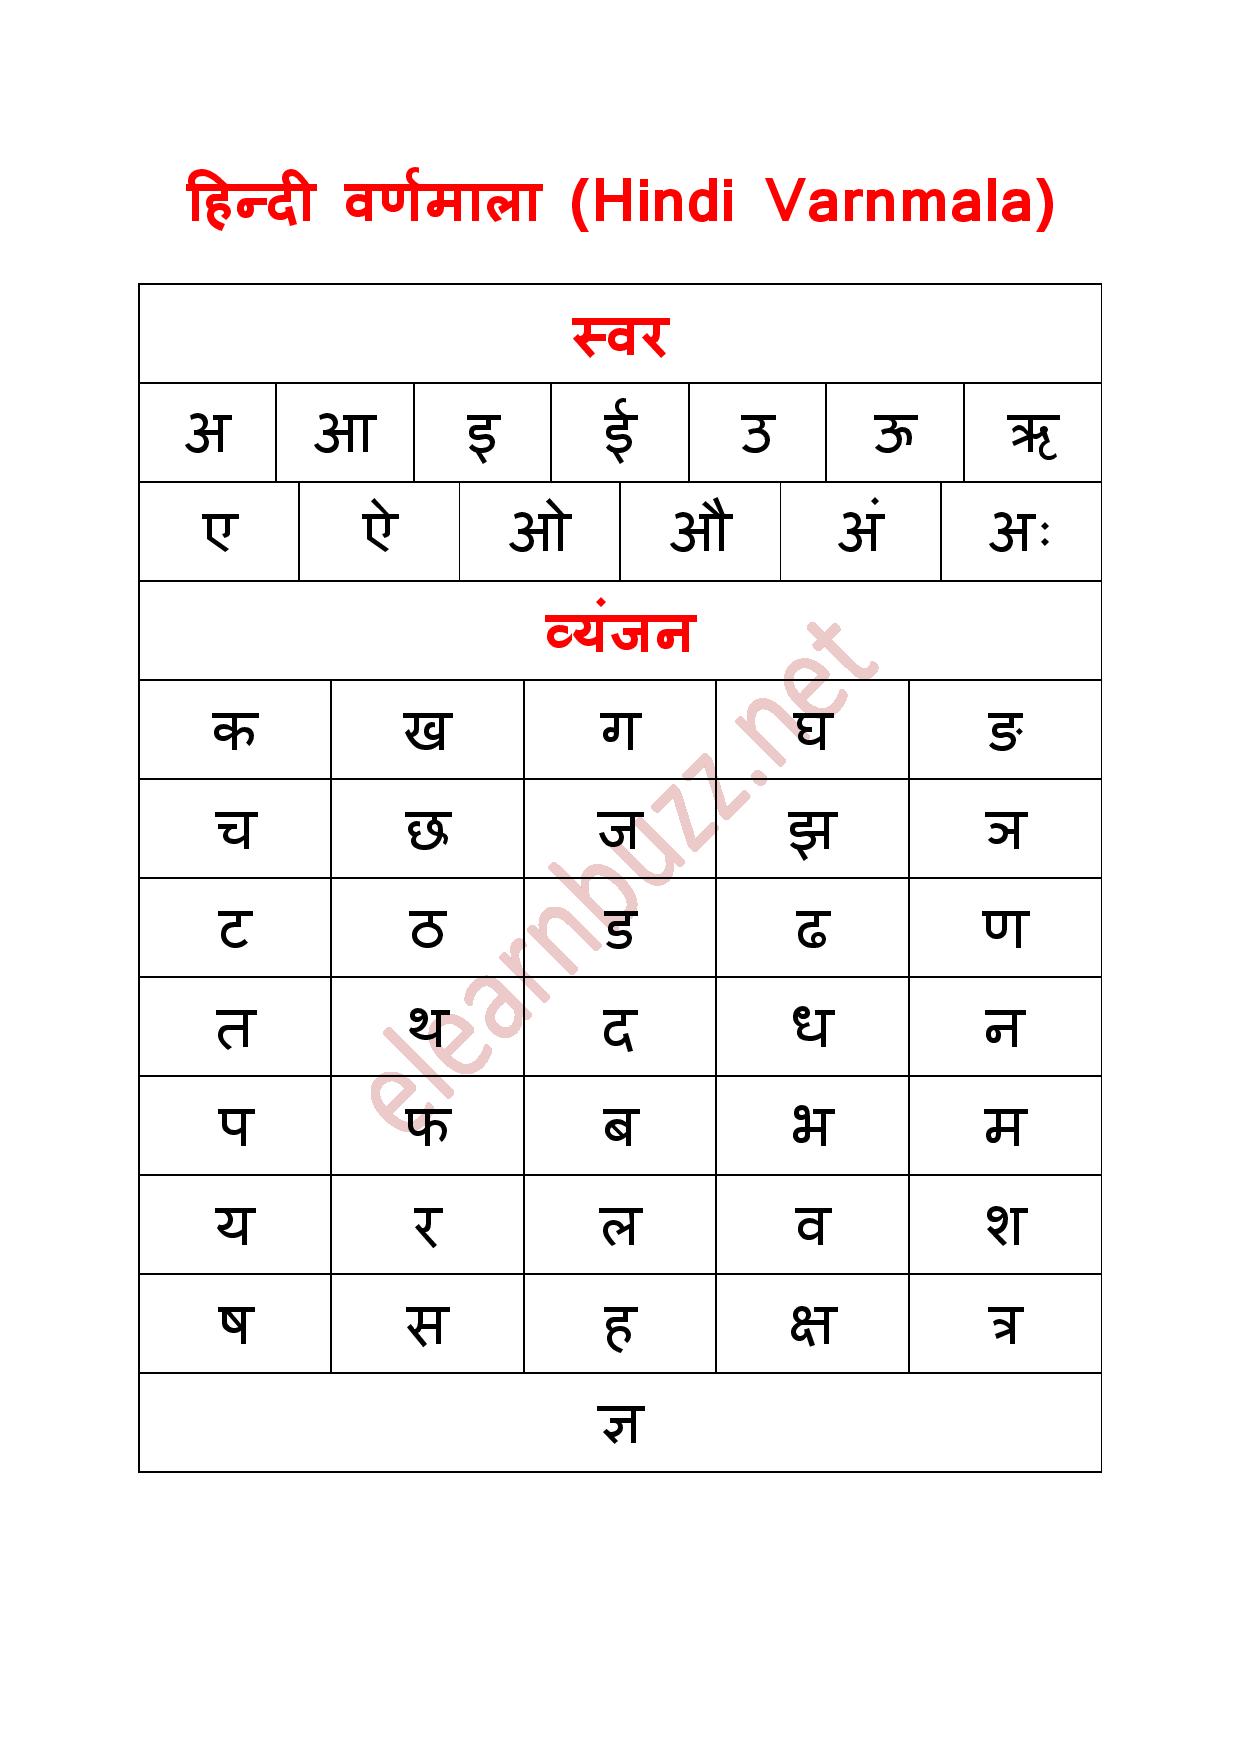 हिन्दी वर्णमाला Hindi Varnamala - eLearnBuzz